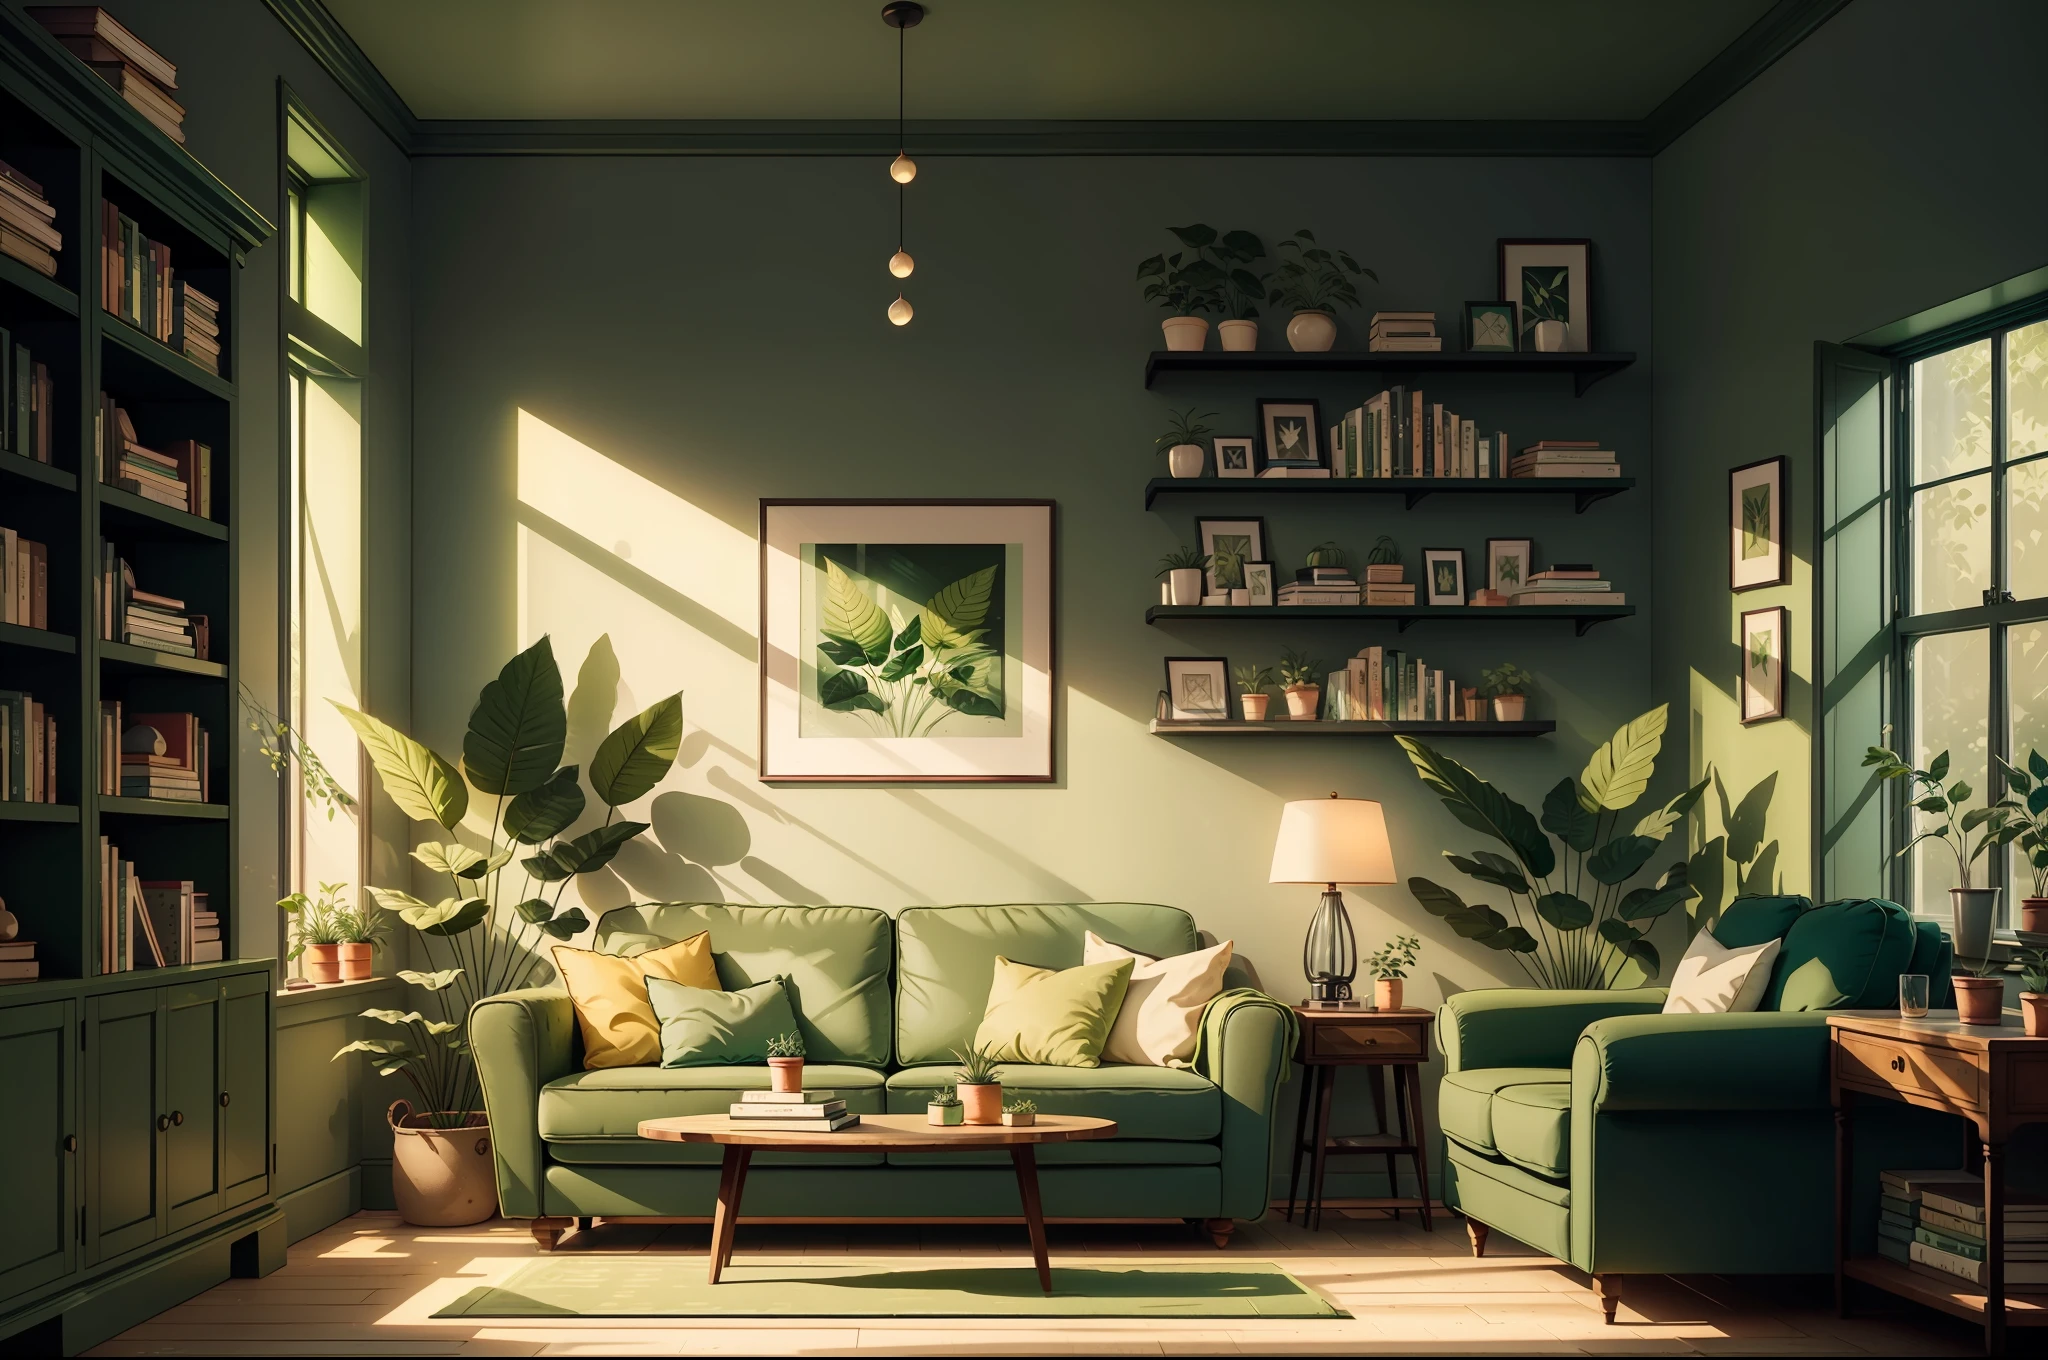 客廳配有綠色沙發、牆上的綠色植物和書架上的書籍, 帶有美麗圖像的電影場景的圖片, 清澈的環境和陽光